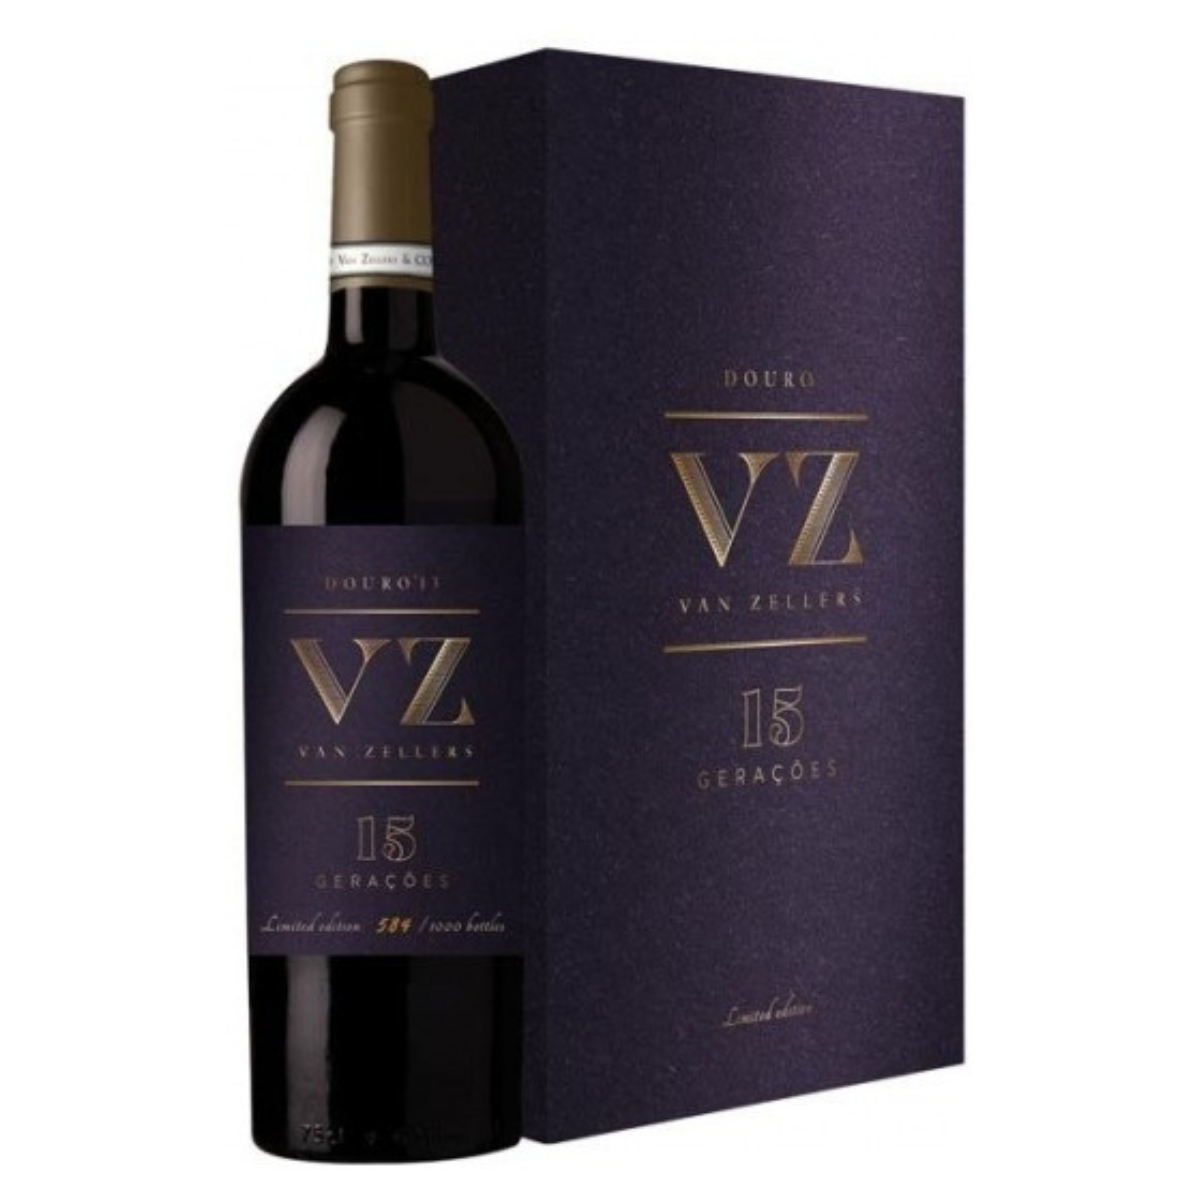 Wein VZ Van Zellers 15 Generation rot 2015 CONJ 2 GRFS